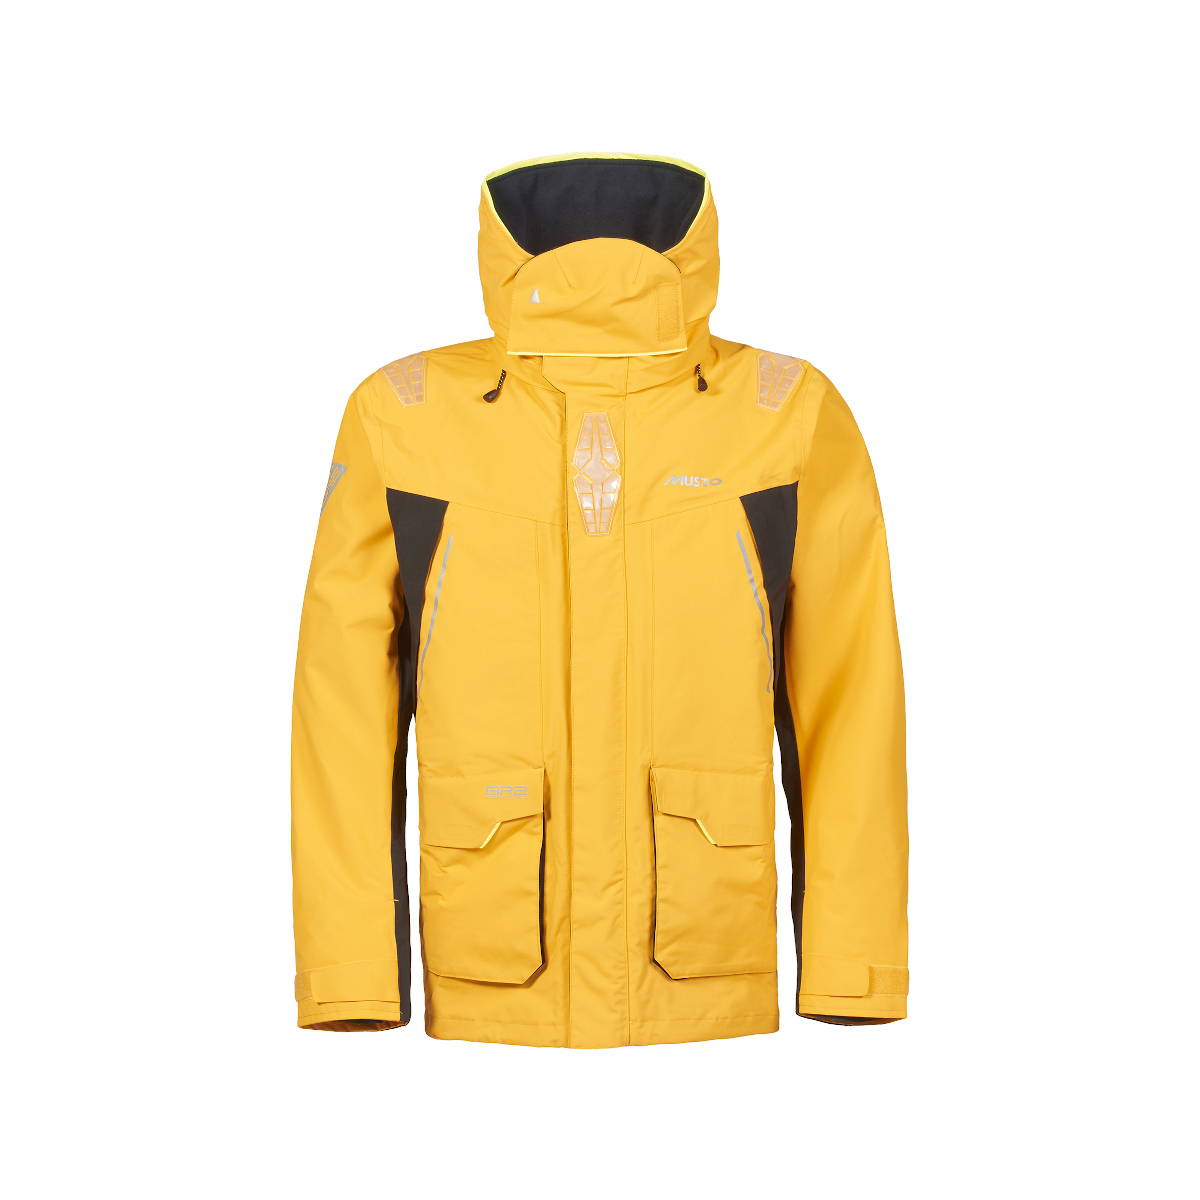 Musto BR2 veste de voile Offshore 2.0 homme jaune, taille XS